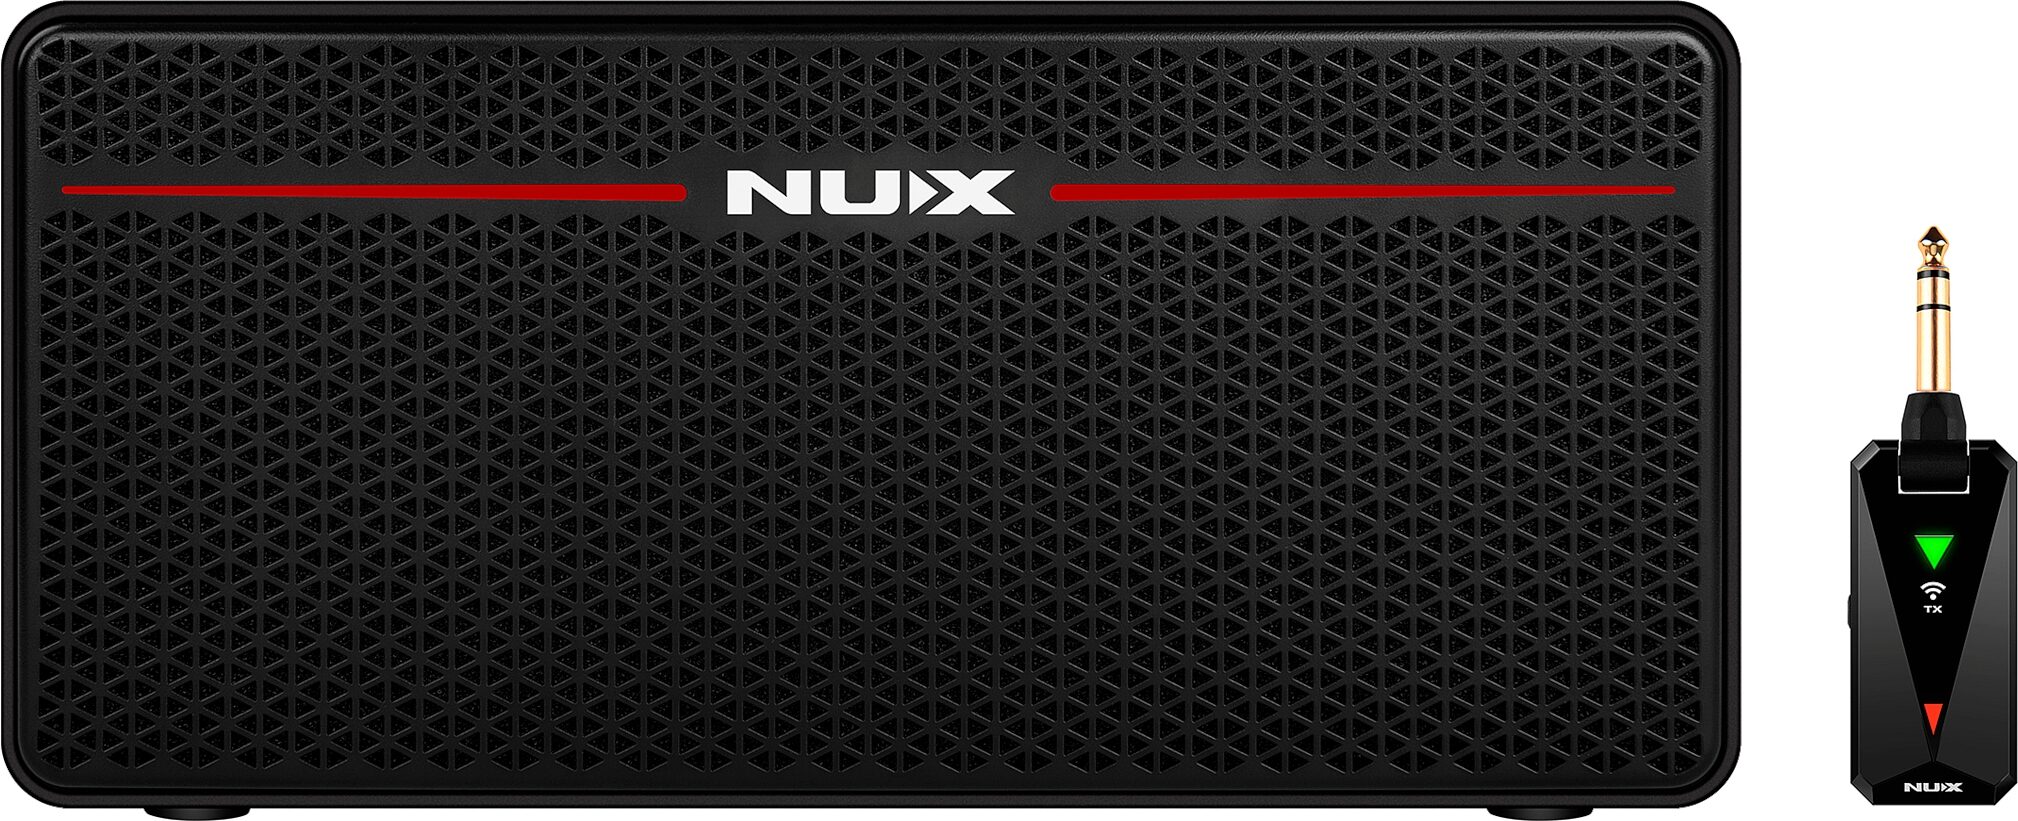 NUX Mighty Space. "Mighty-Space NUX Mighty-Space комбоусилитель гитарный, NUX Cherub 4fa69b3b". NUX Mighty Space aux. NUX Mighty Space as Bluetooth.